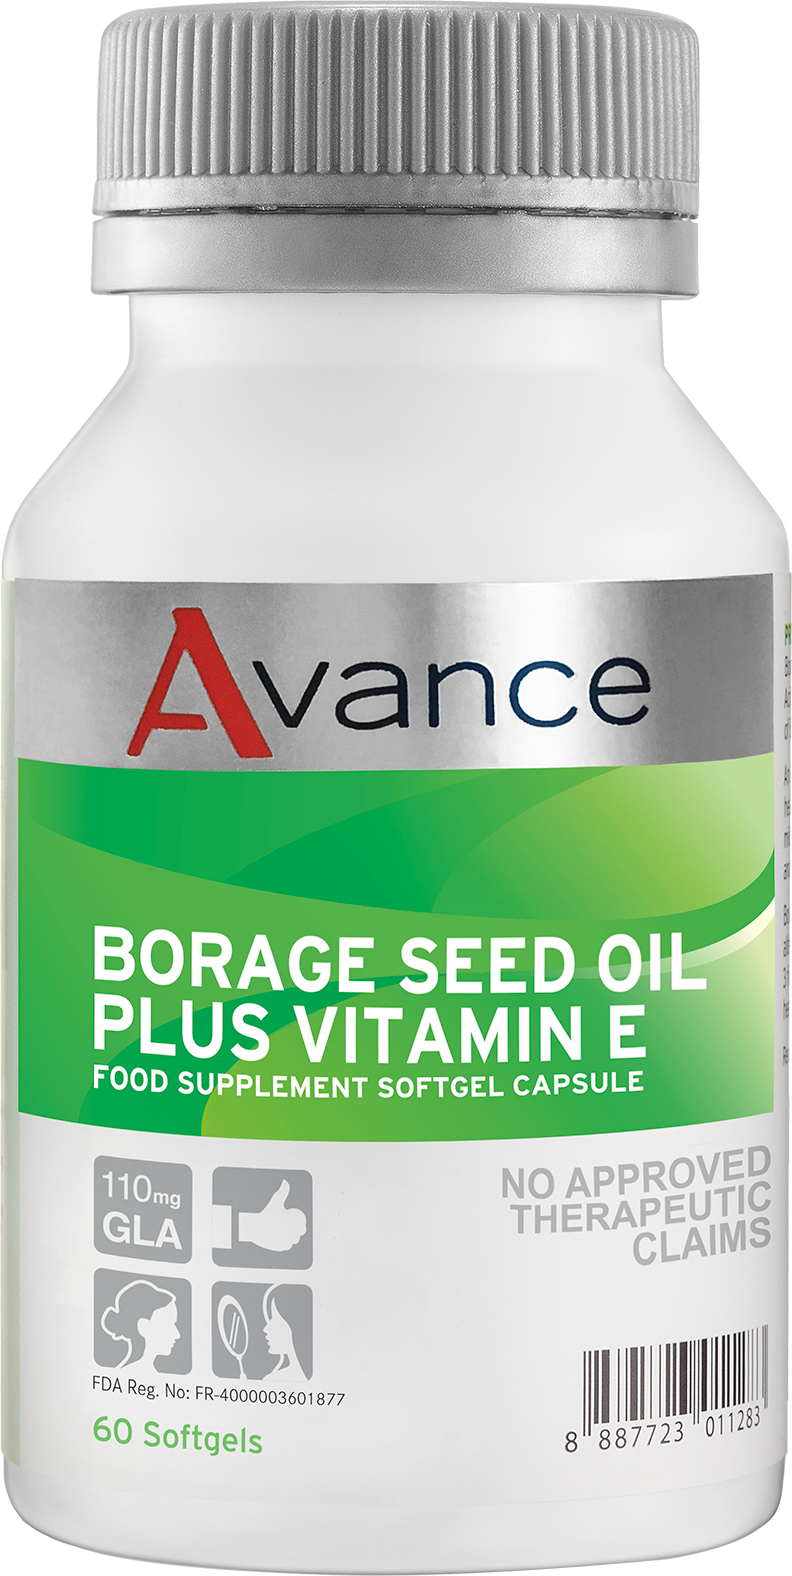 Borage Seed Oil Plus Vitamin E